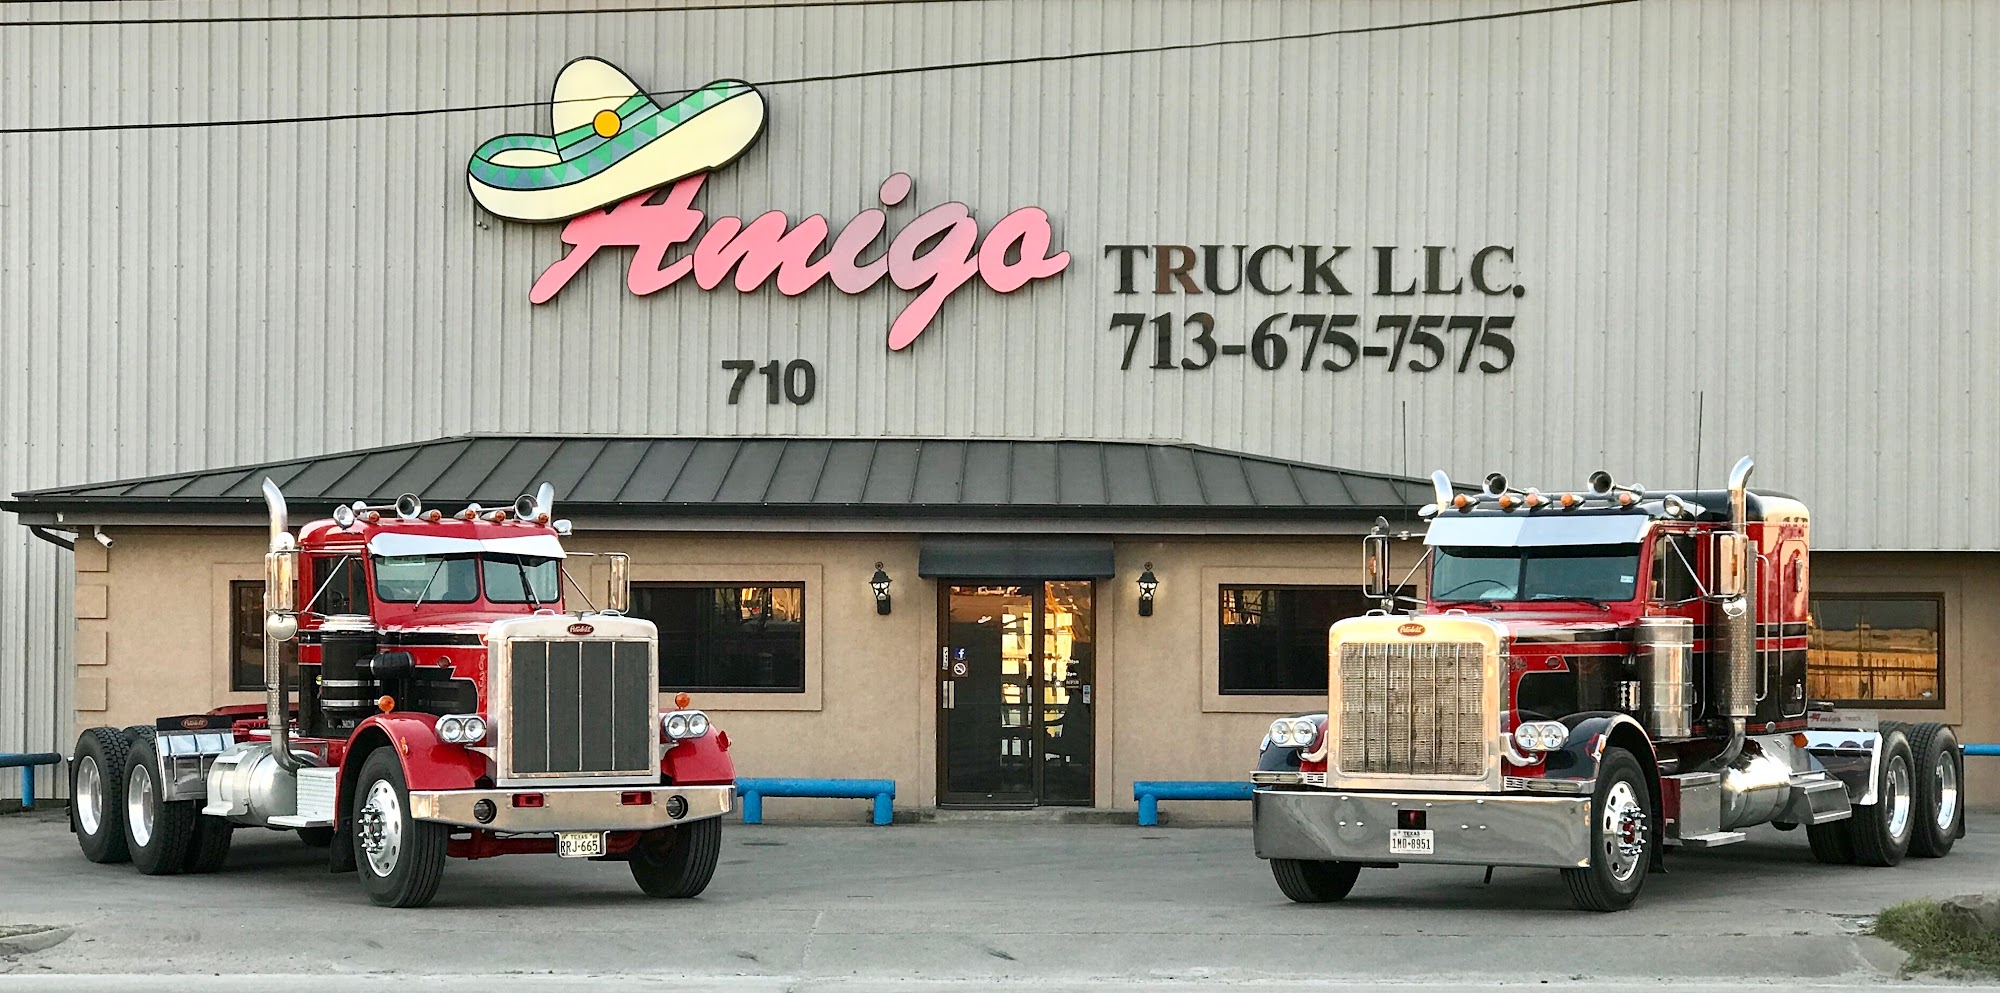 Amigo Truck LLC